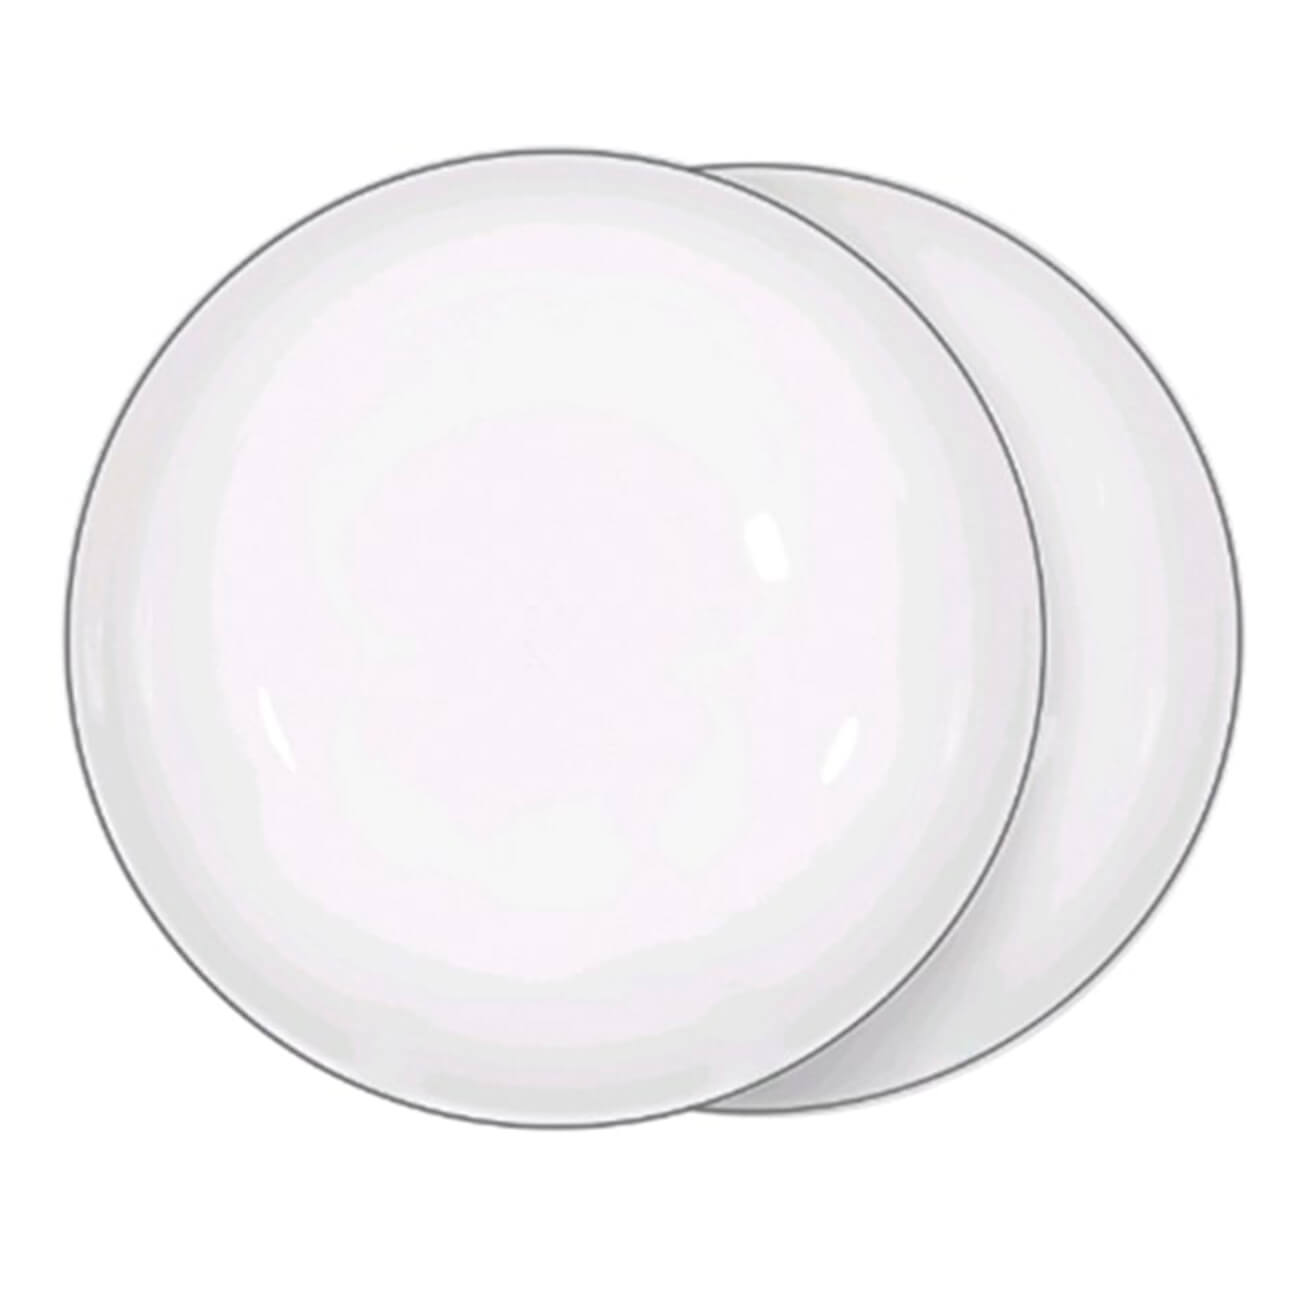 Тарелка суповая, 20х5 см, 2 шт, фарфор F, белая, Ideal silver тарелка суповая доляна